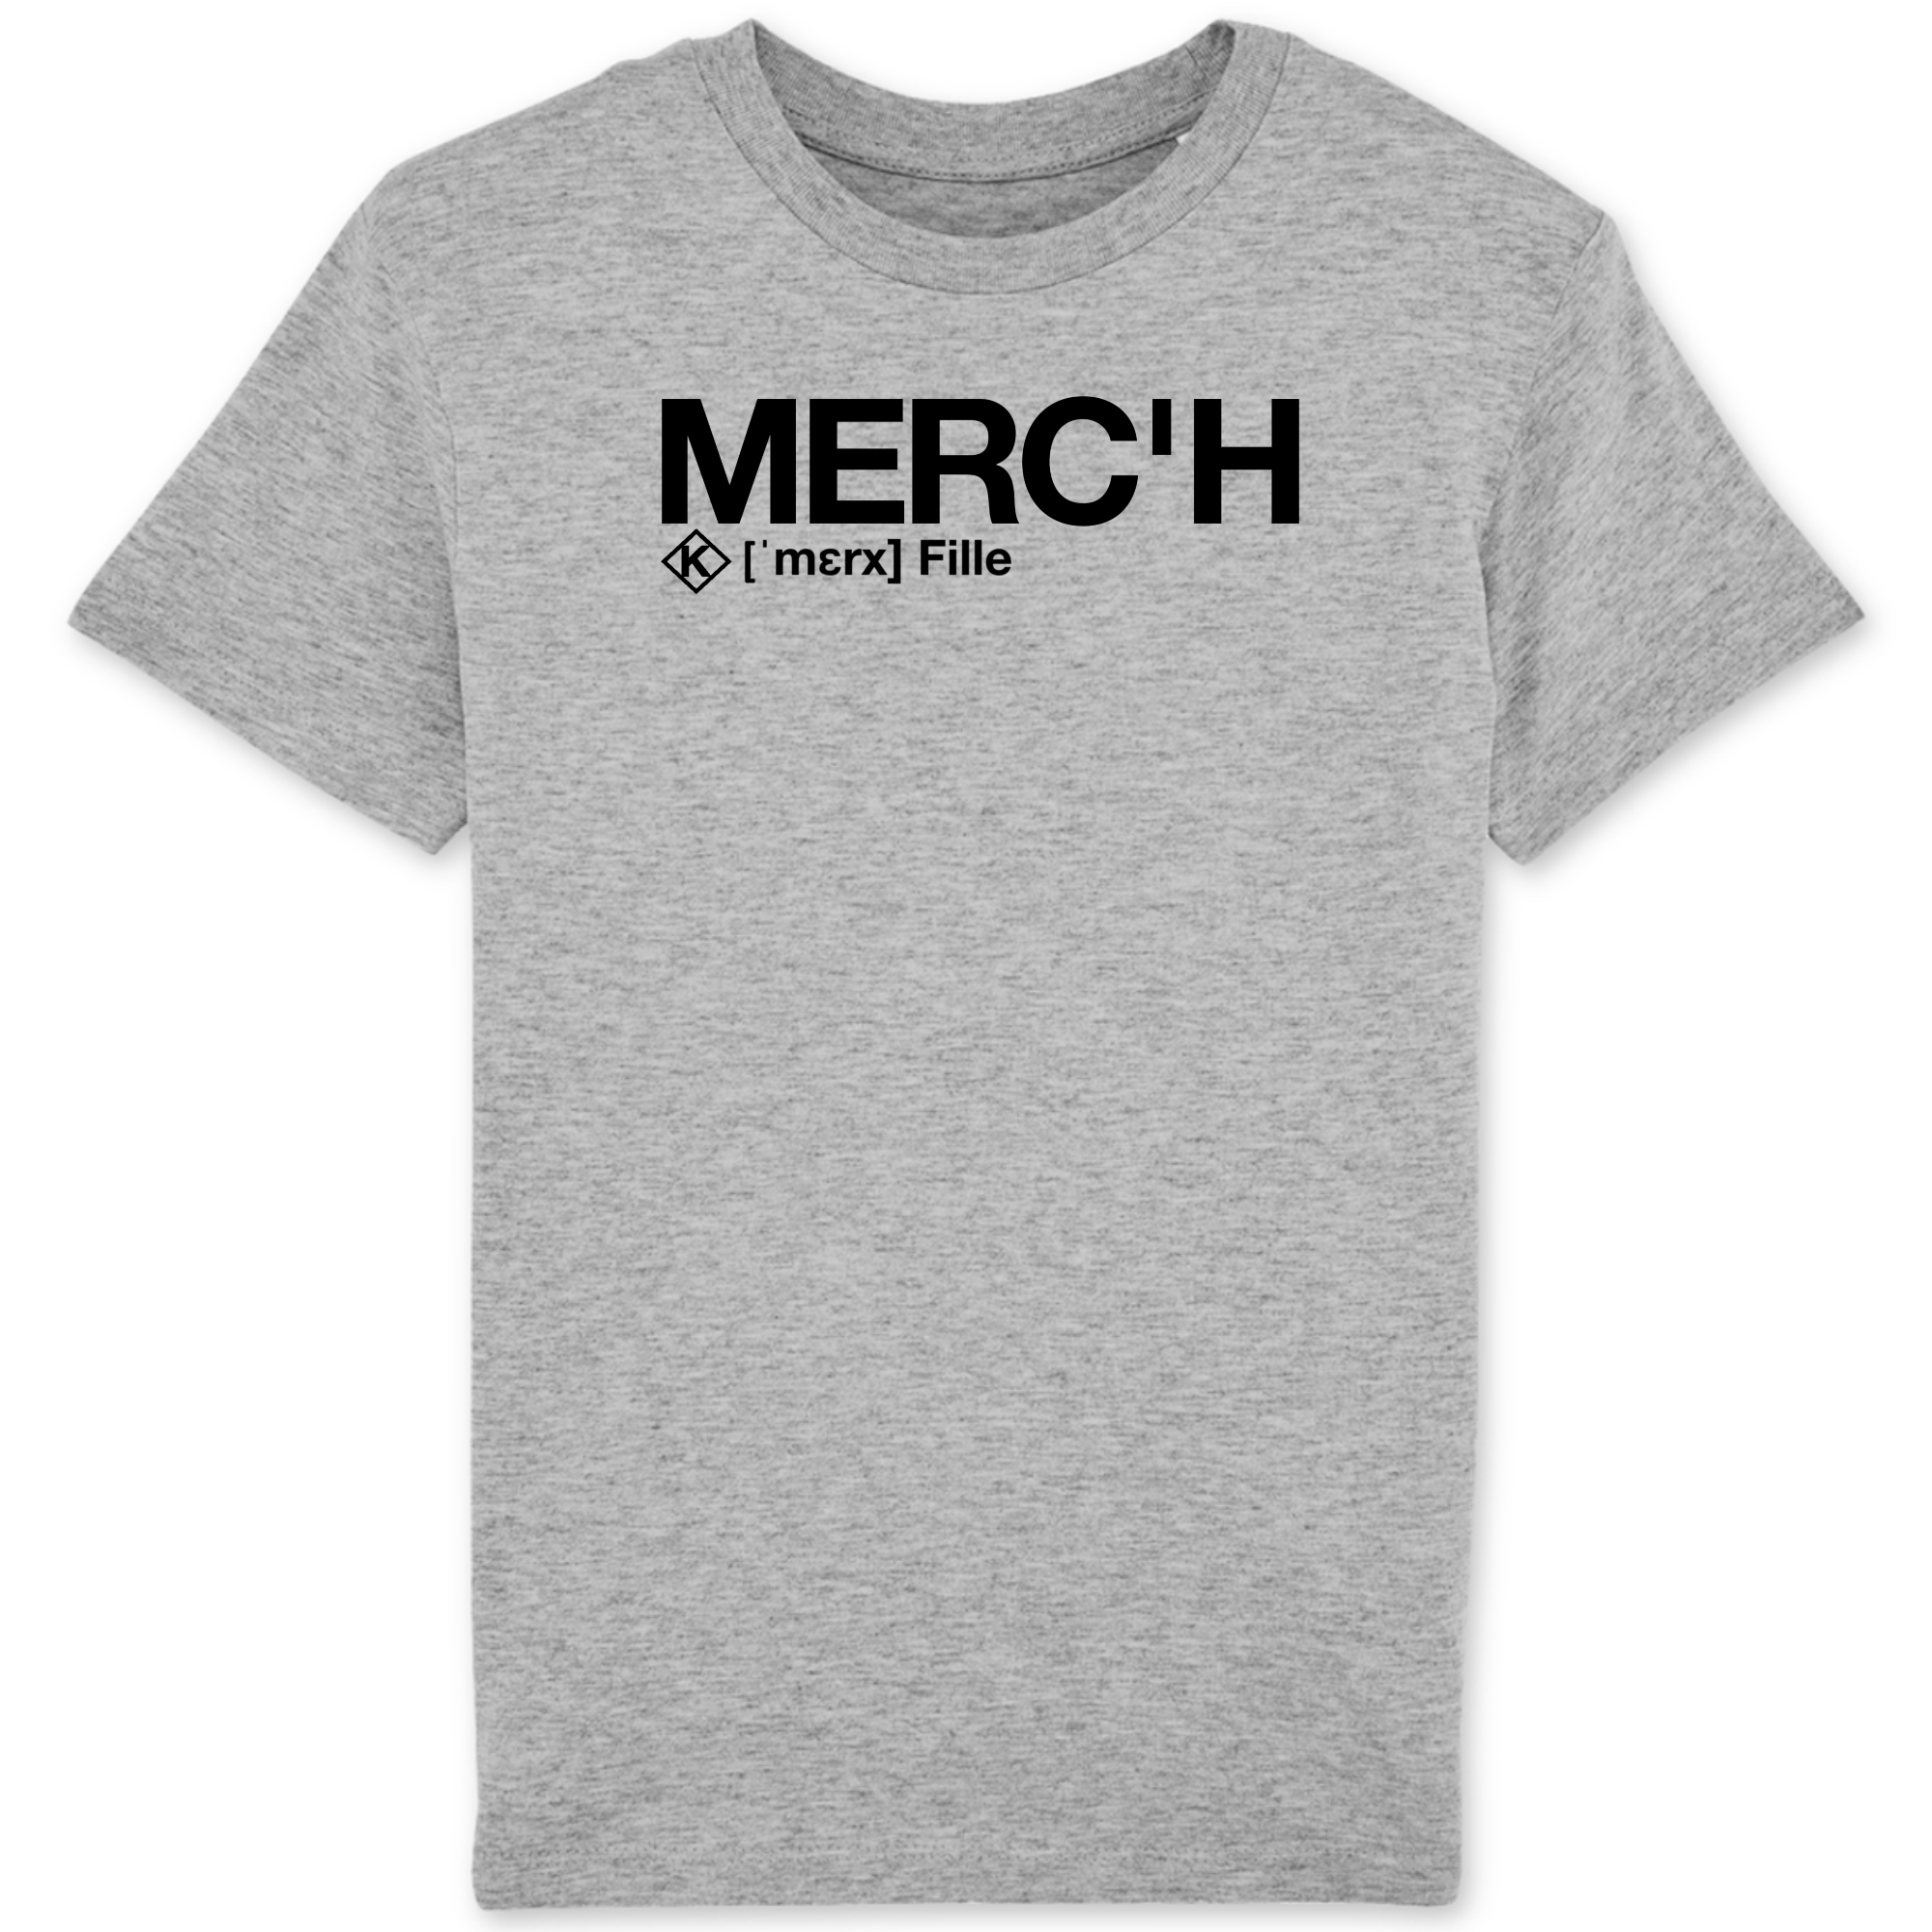 Merc'h T-shirt (Fille) - noir